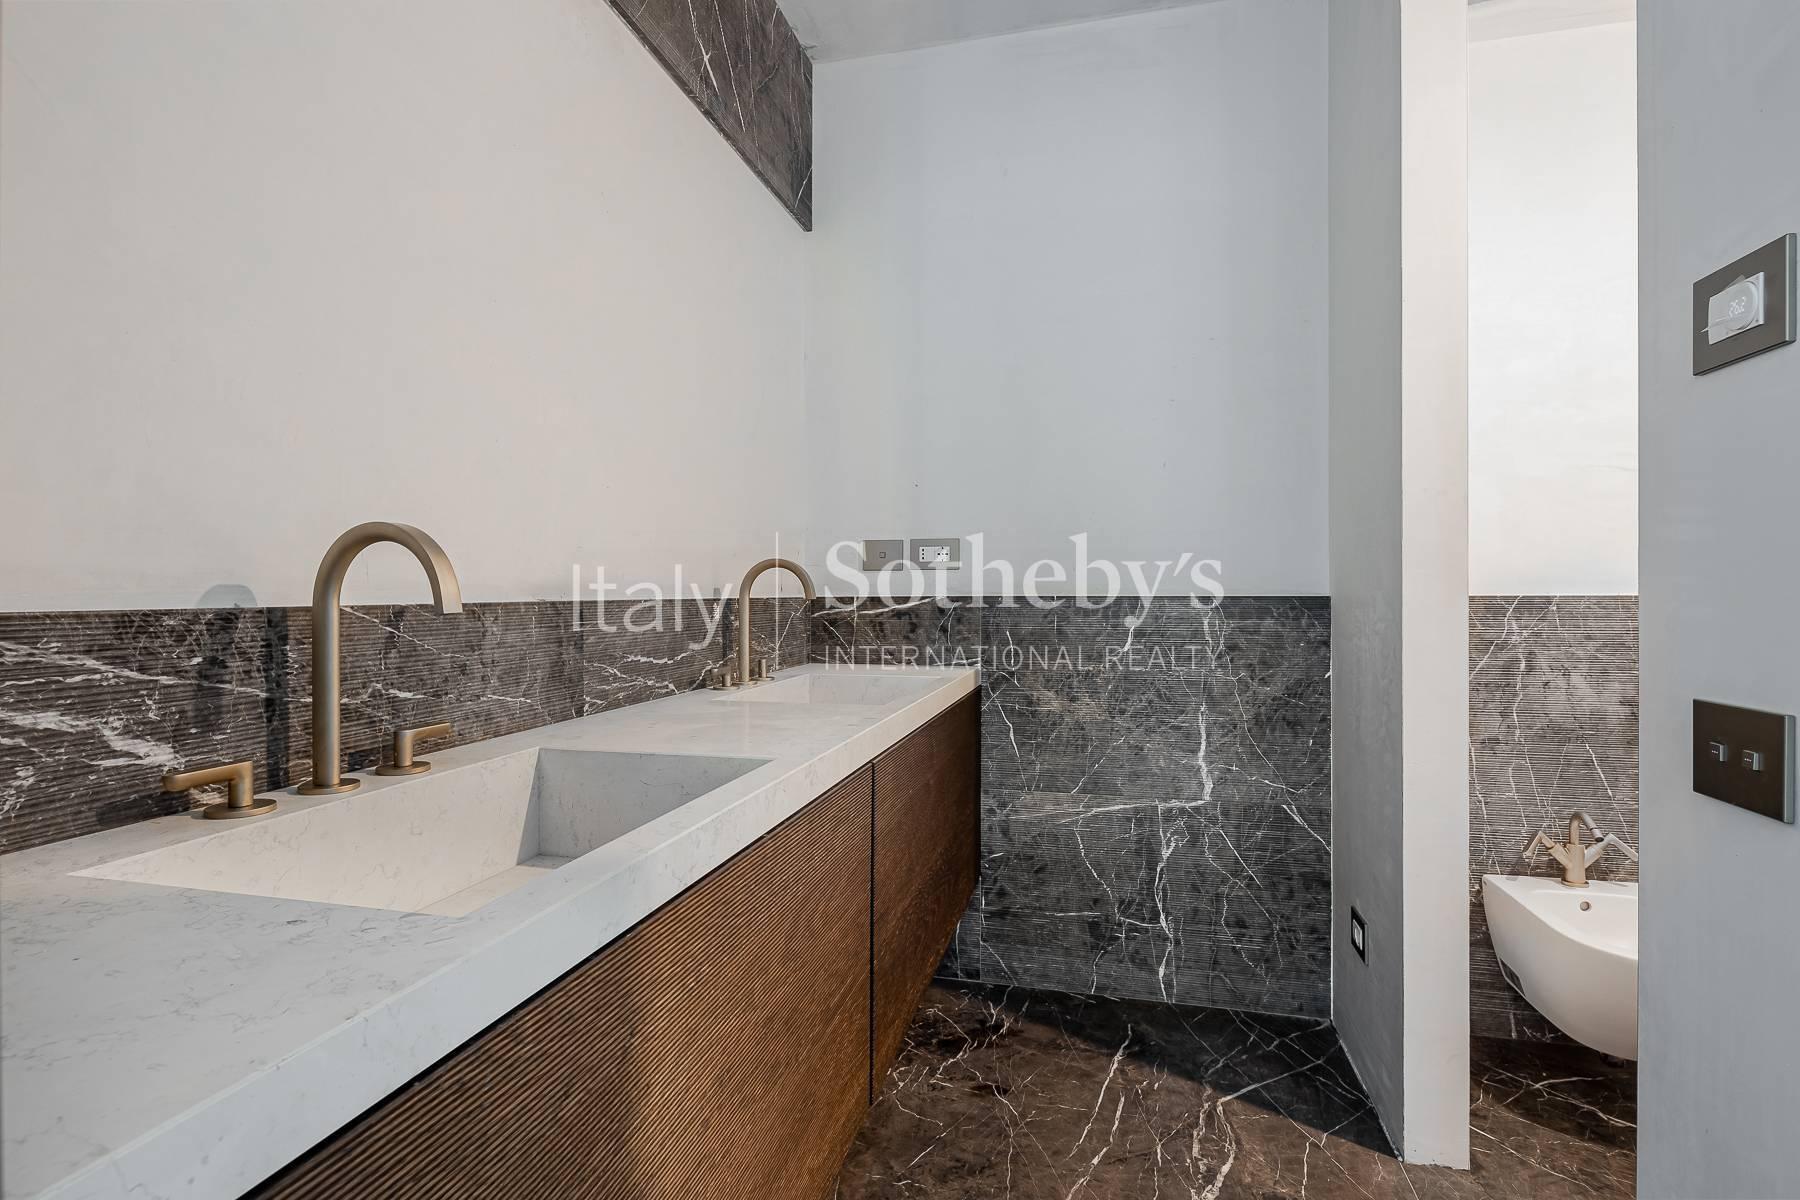 Bespoke newly renovated apartment in Via della Spiga - 5